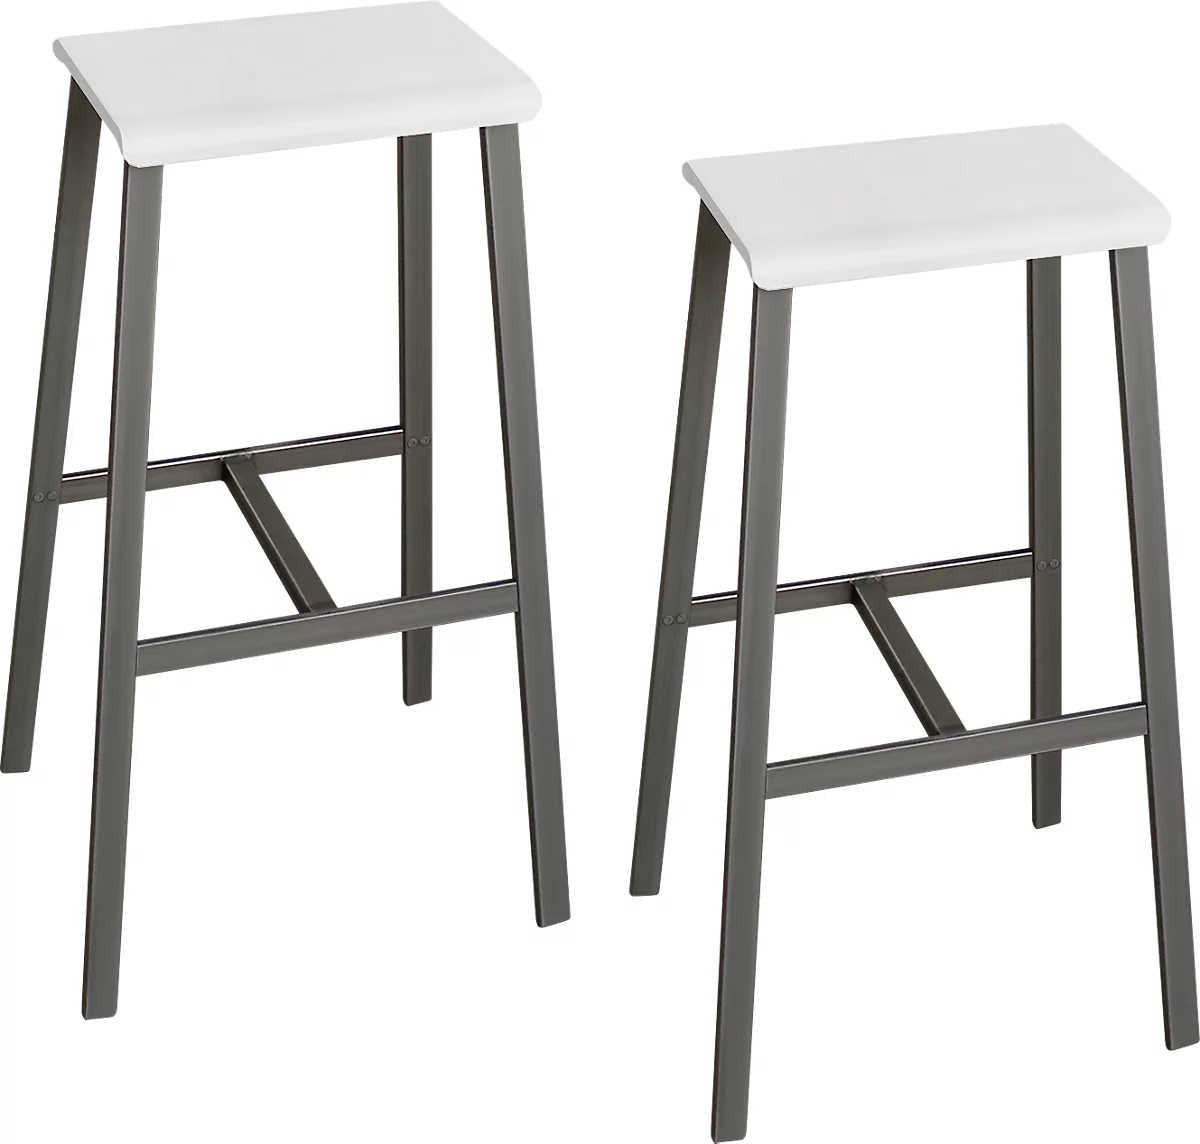 Barhocker Meeting Point, Industriedesign, weiß, Rohstahlbeine, Sitzhöhe 770 mm, 2 Stück